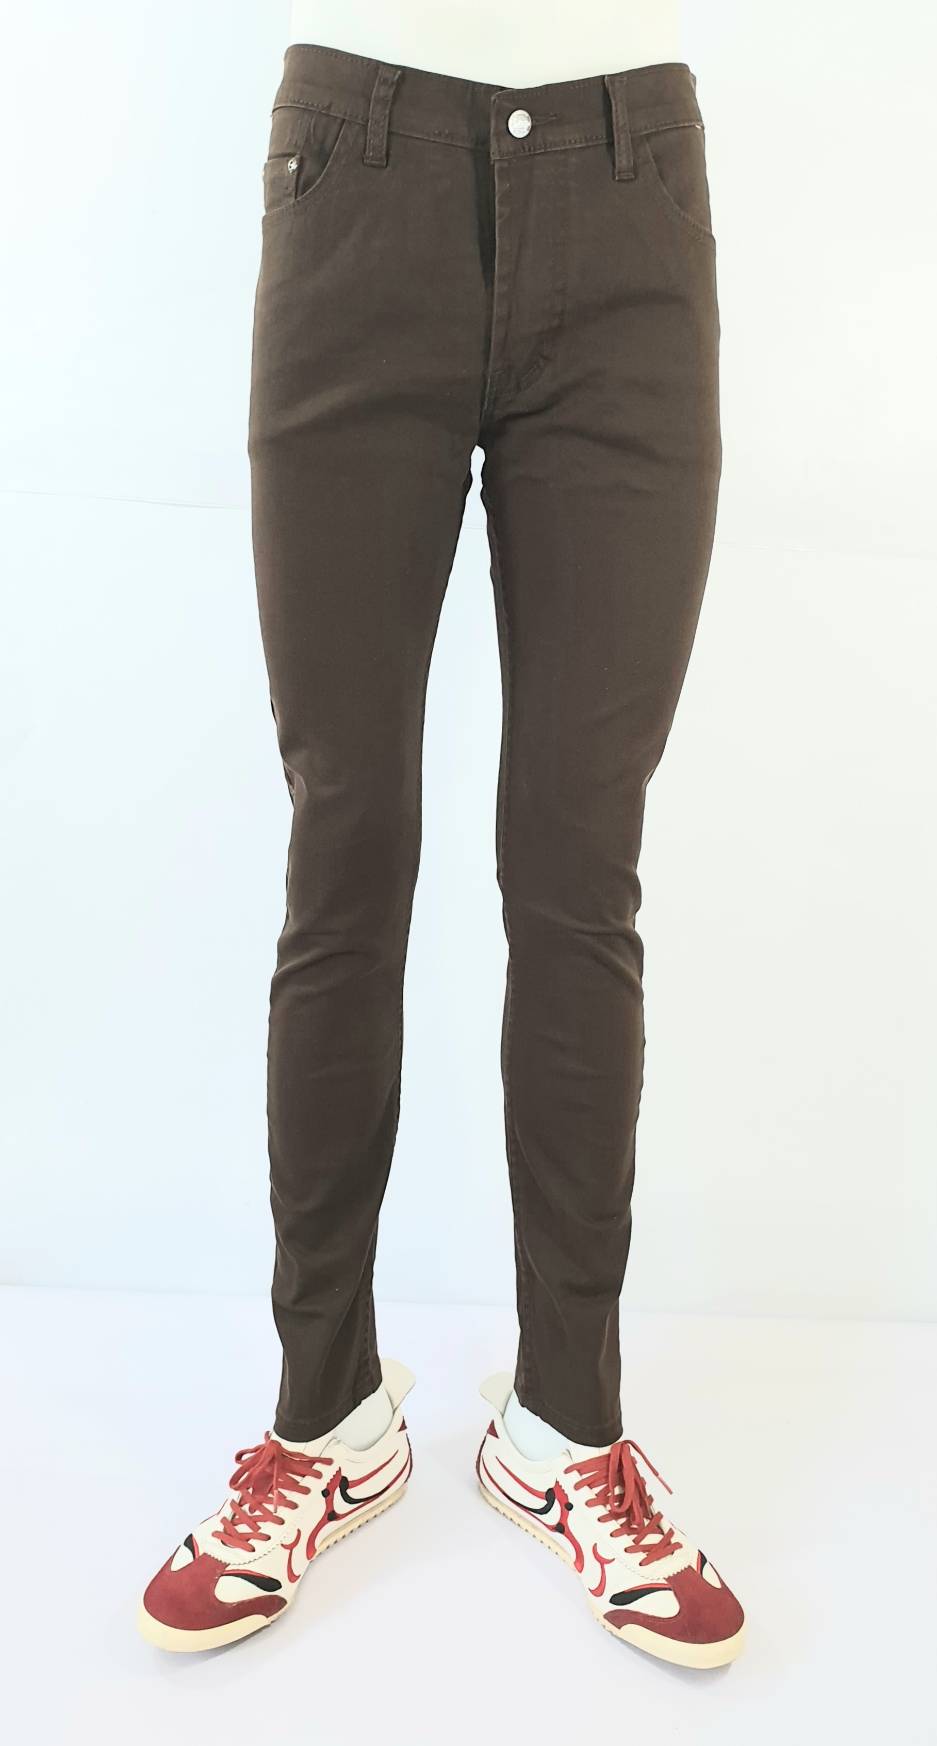 กางเกงเดฟสีผ้ายืด กางเกงขายาวเดฟ มีให้เลือกหลายสี ผ้ายืดอย่างดี Size 28-36